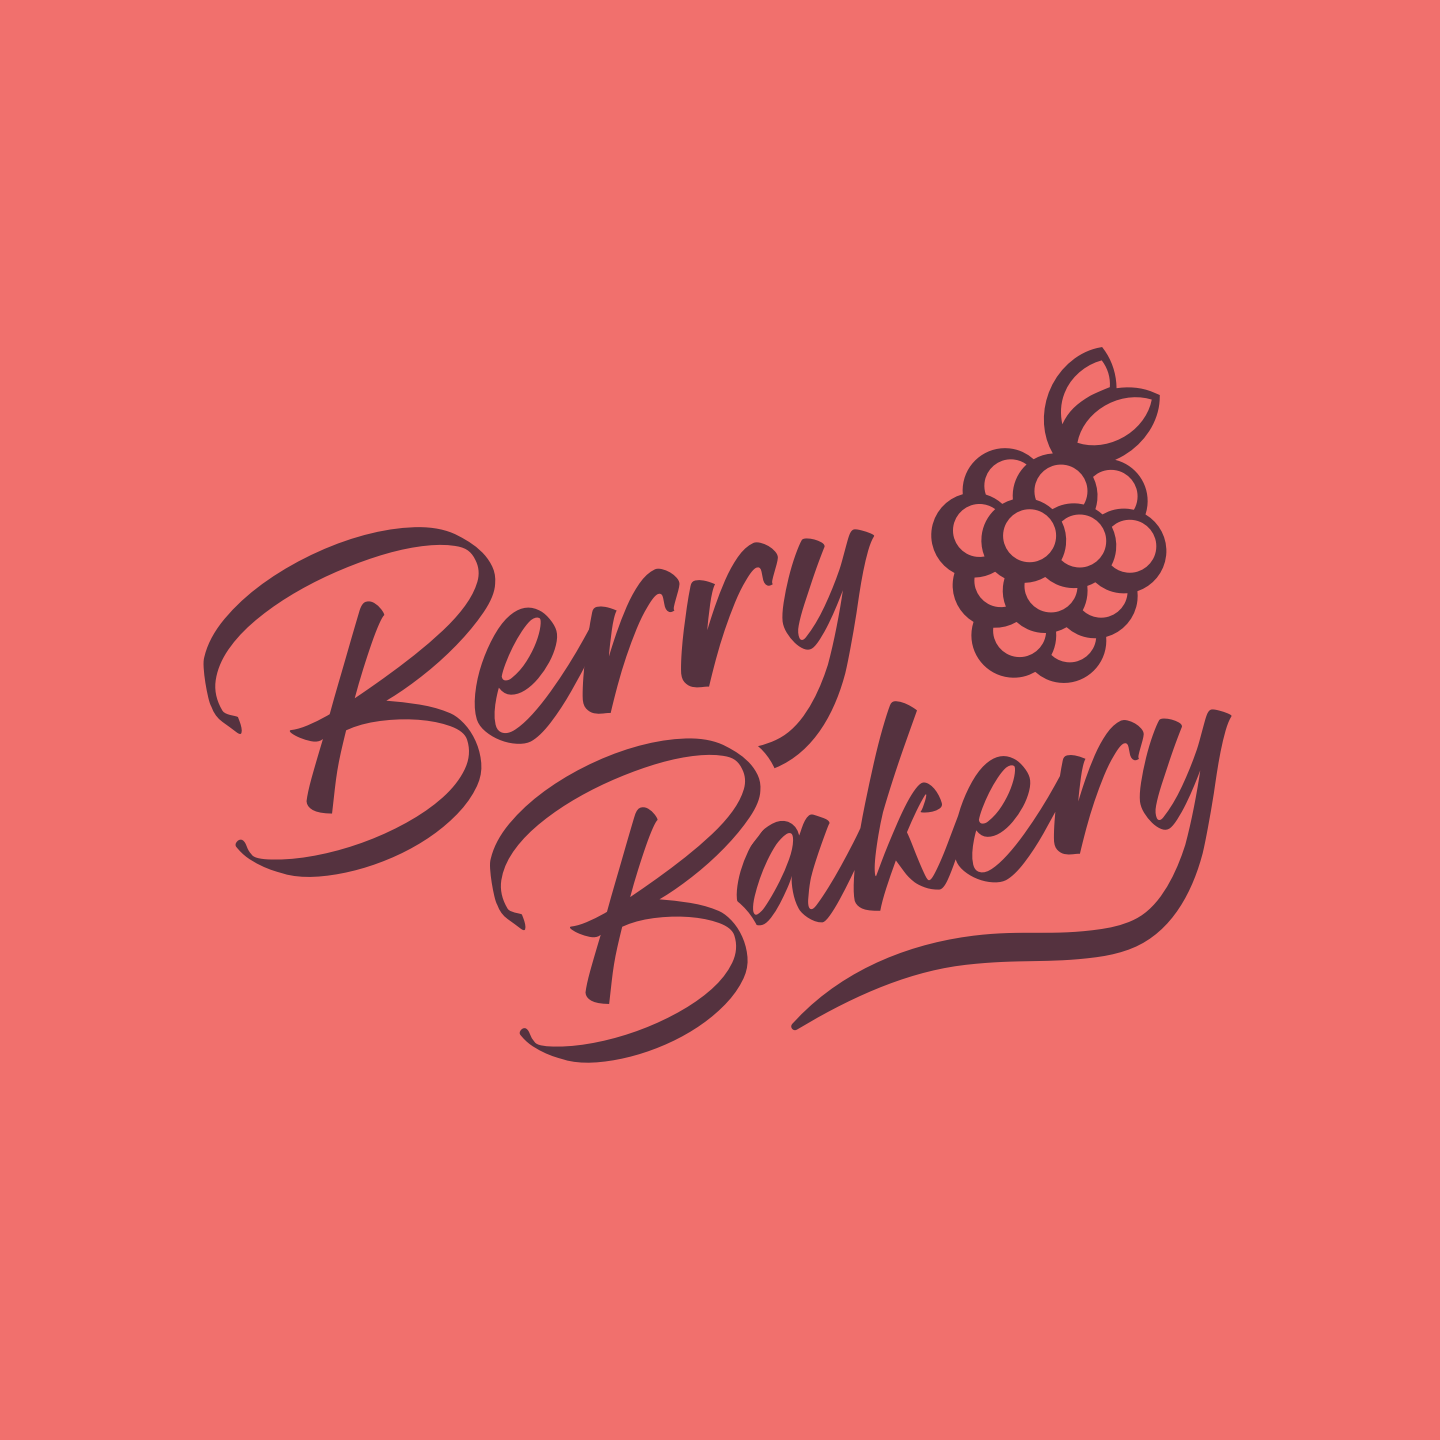 EXHIBITOR: Berry Bakery